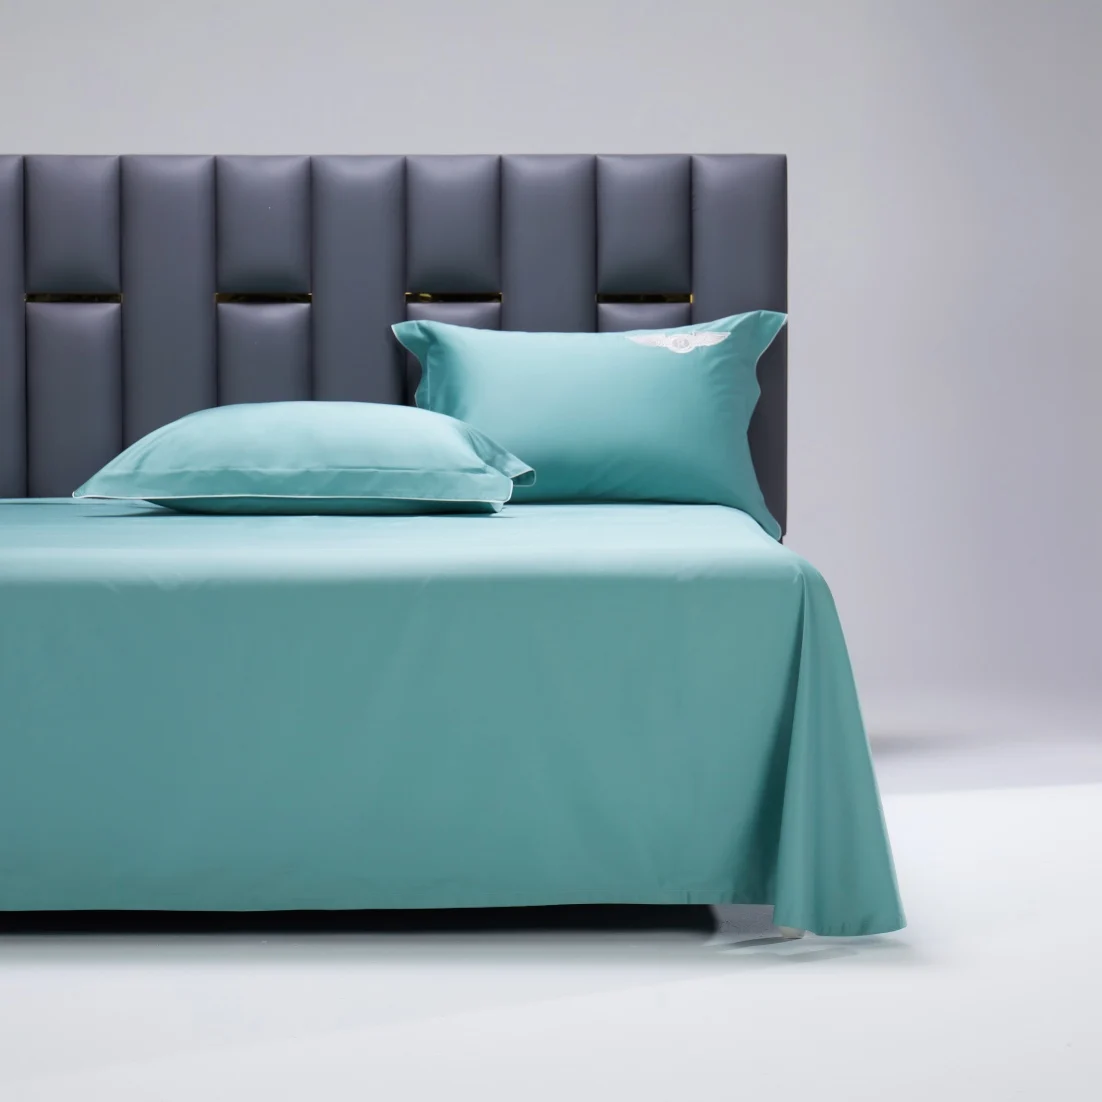 Siêu Mềm Luxury Bedding Sets Comforter 100% Cotton Bed Linen ...